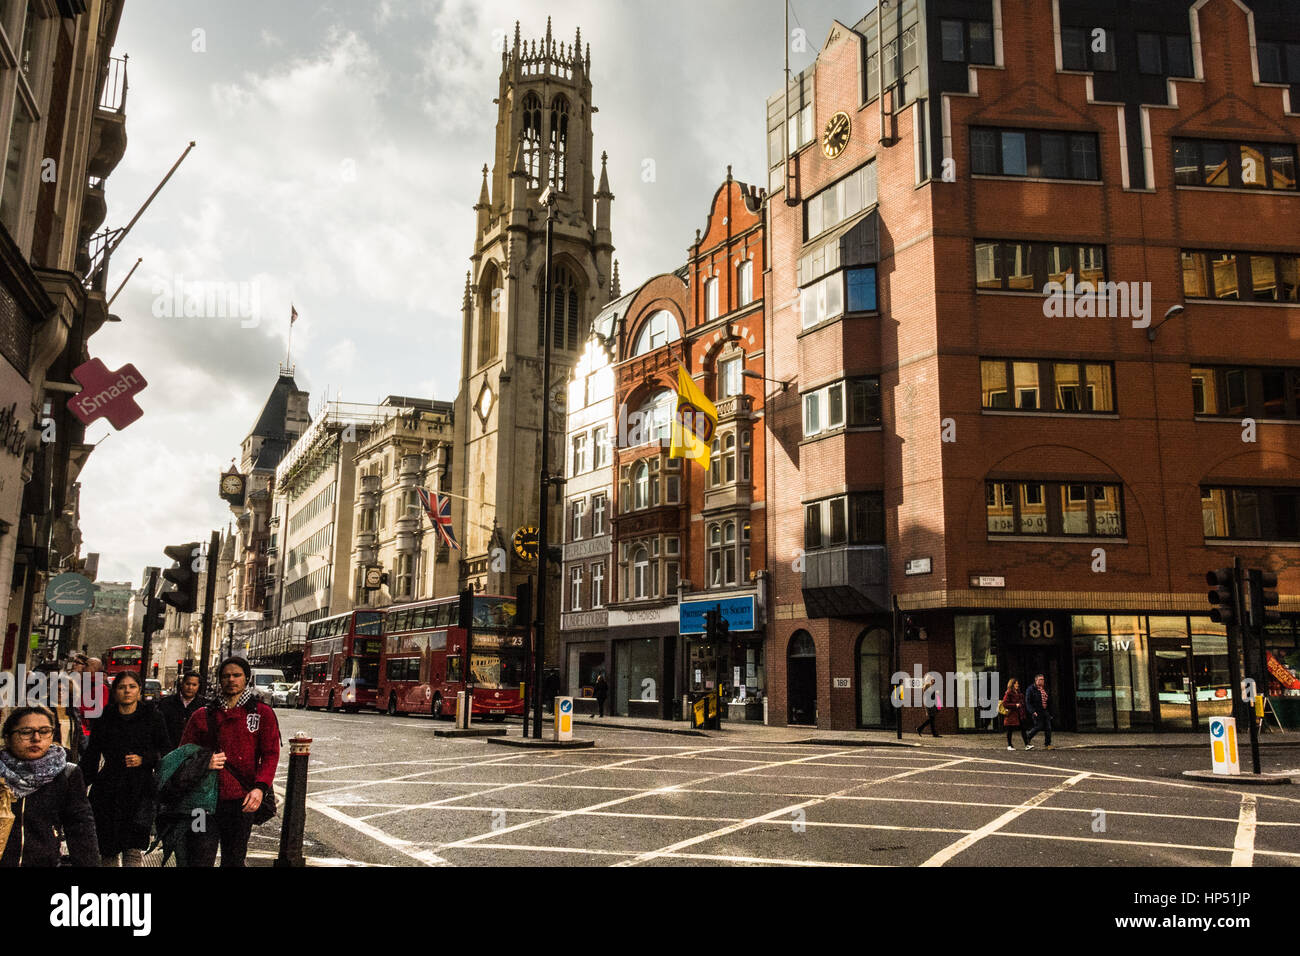 Fleet Street, London, UK. Stock Photo